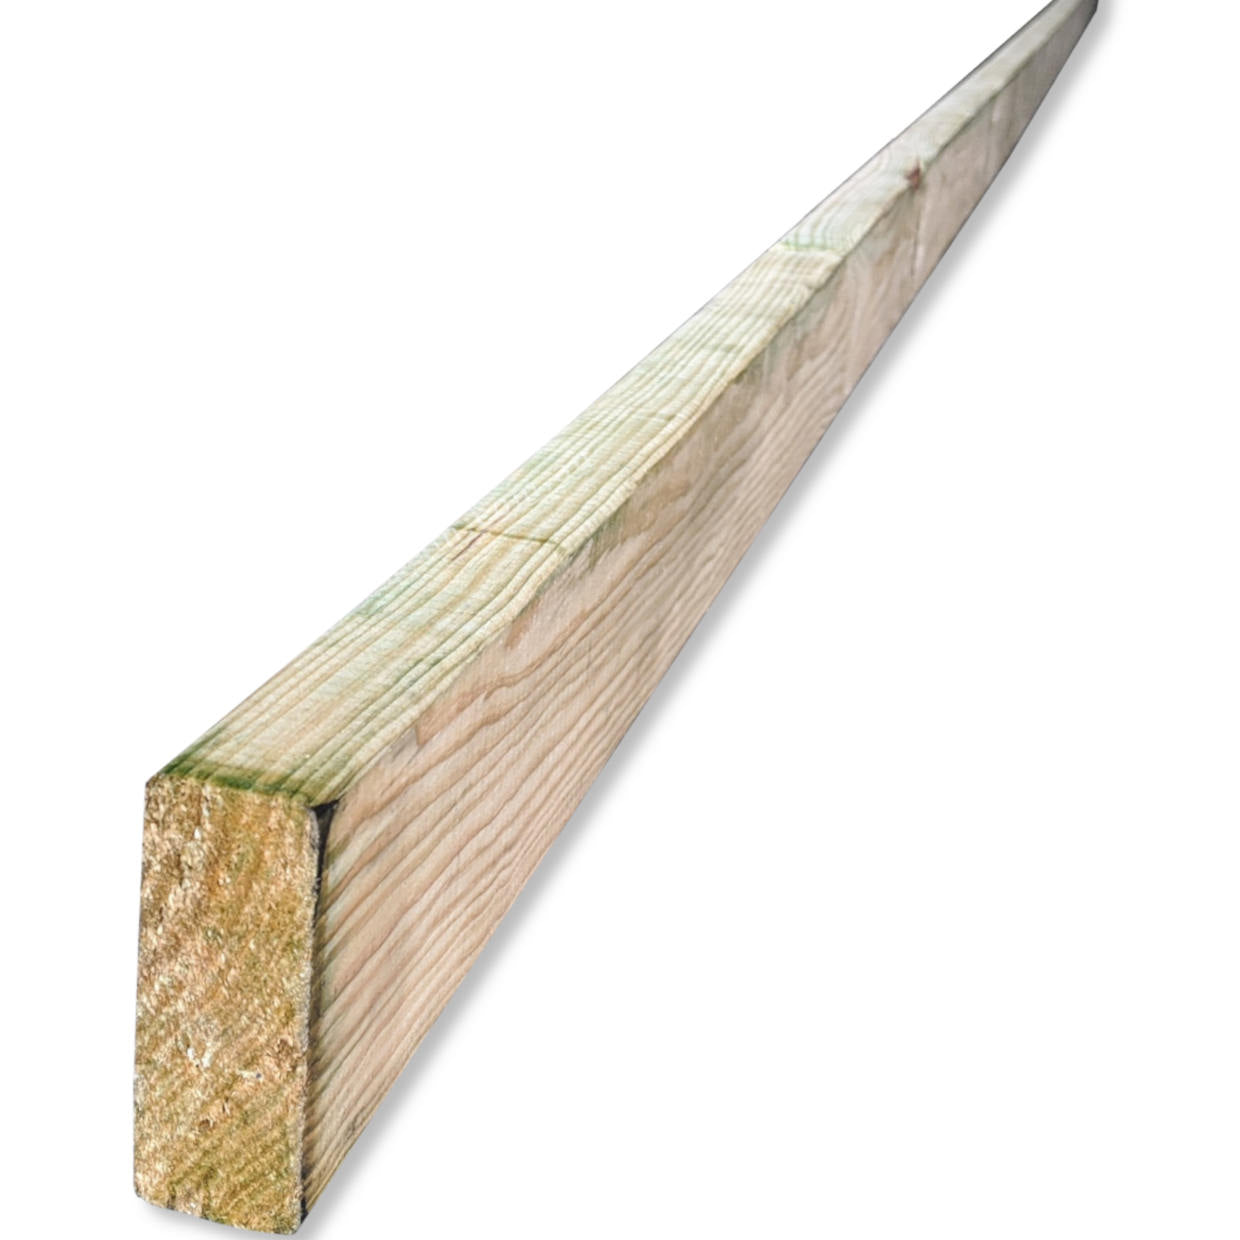    35x90_timber